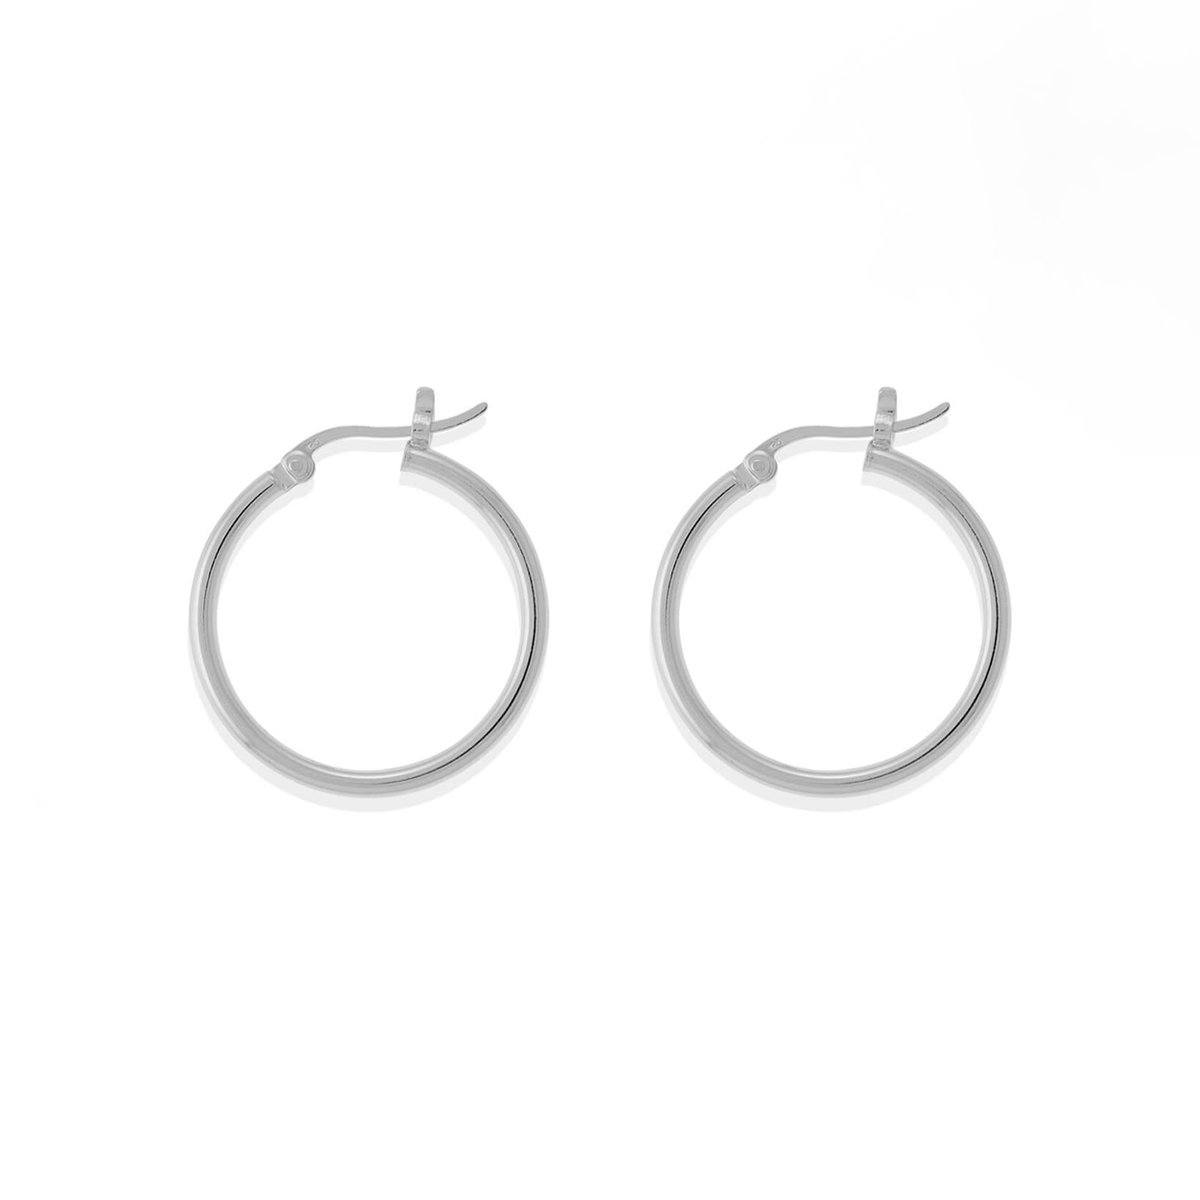 Boma Jewelry Earrings Sterling Silver / 1" Belle Hoops